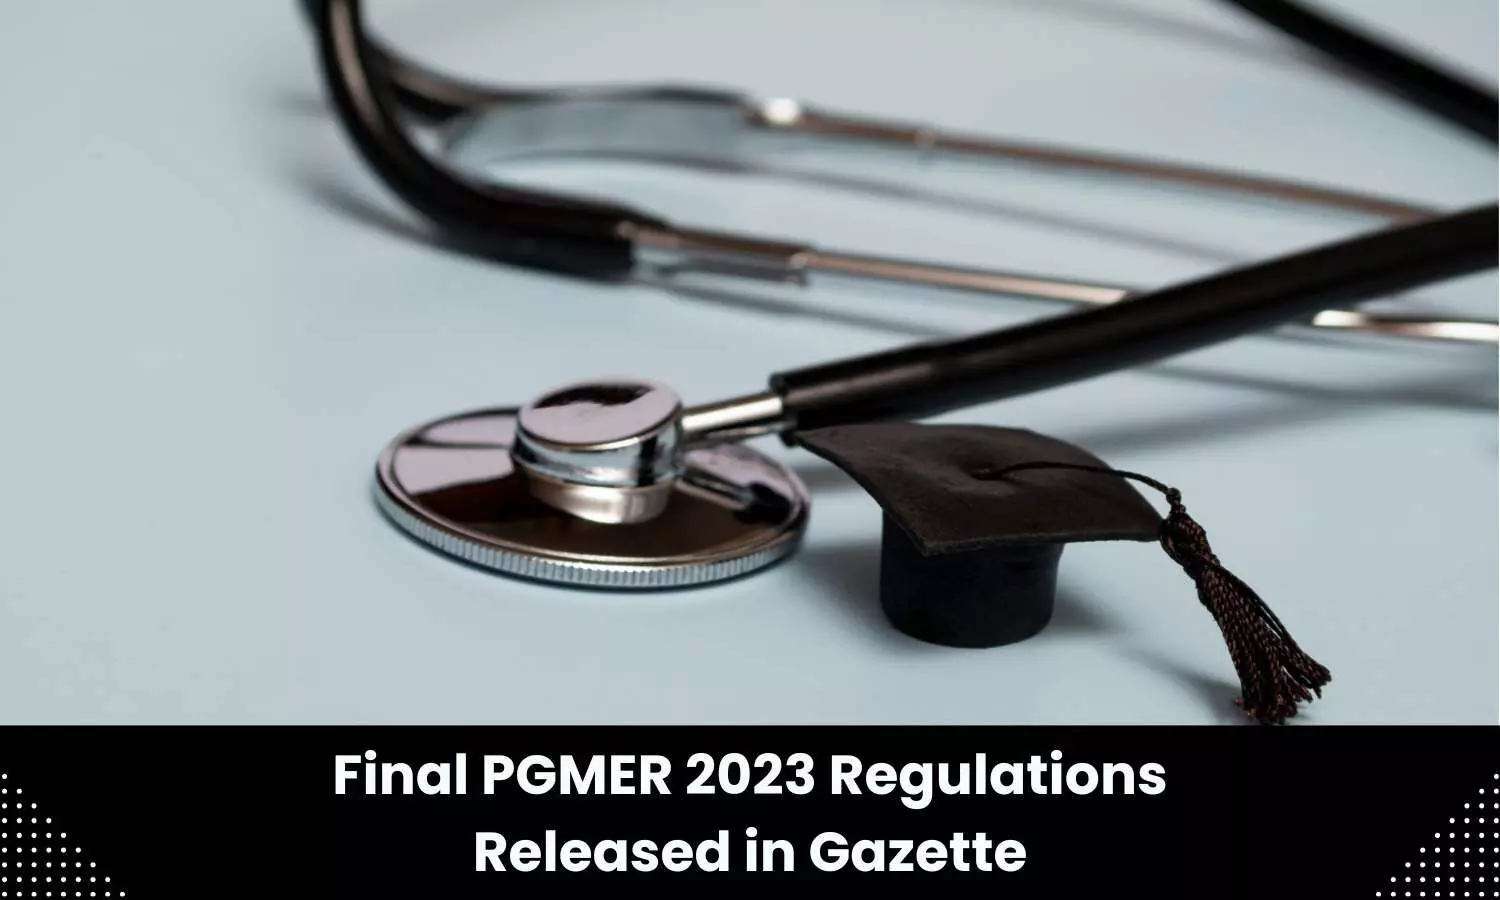 Final PGMER 2023 Regulations released in Gazette